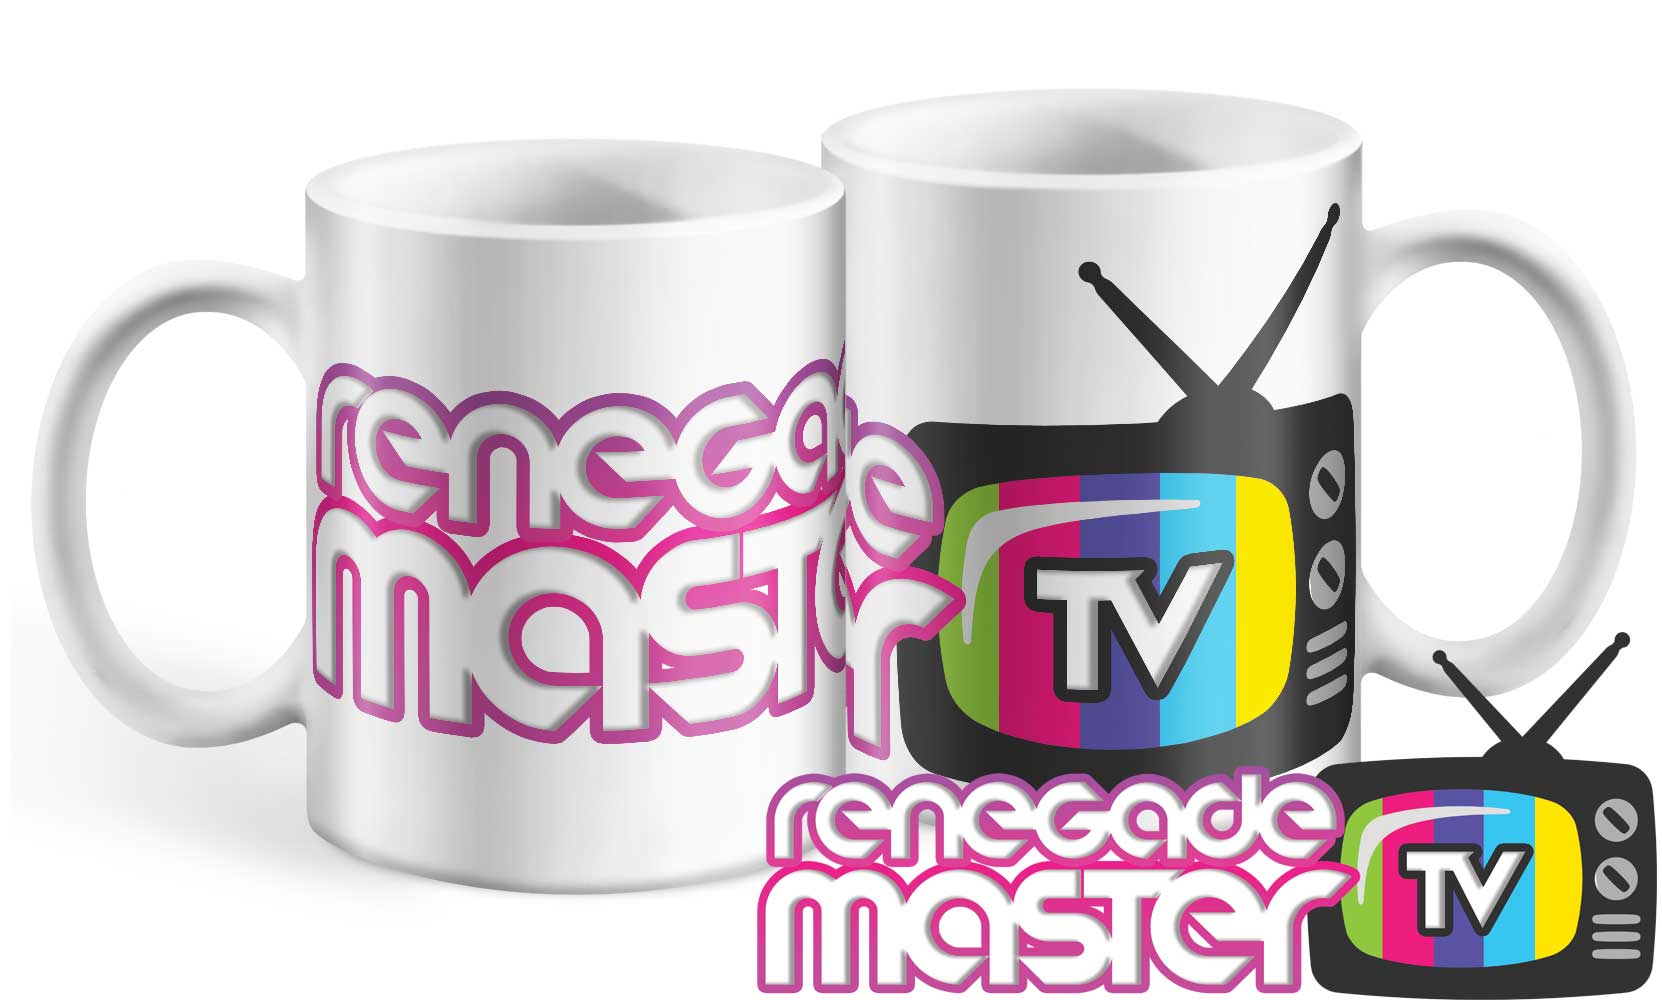 Renegade Master TV Mug